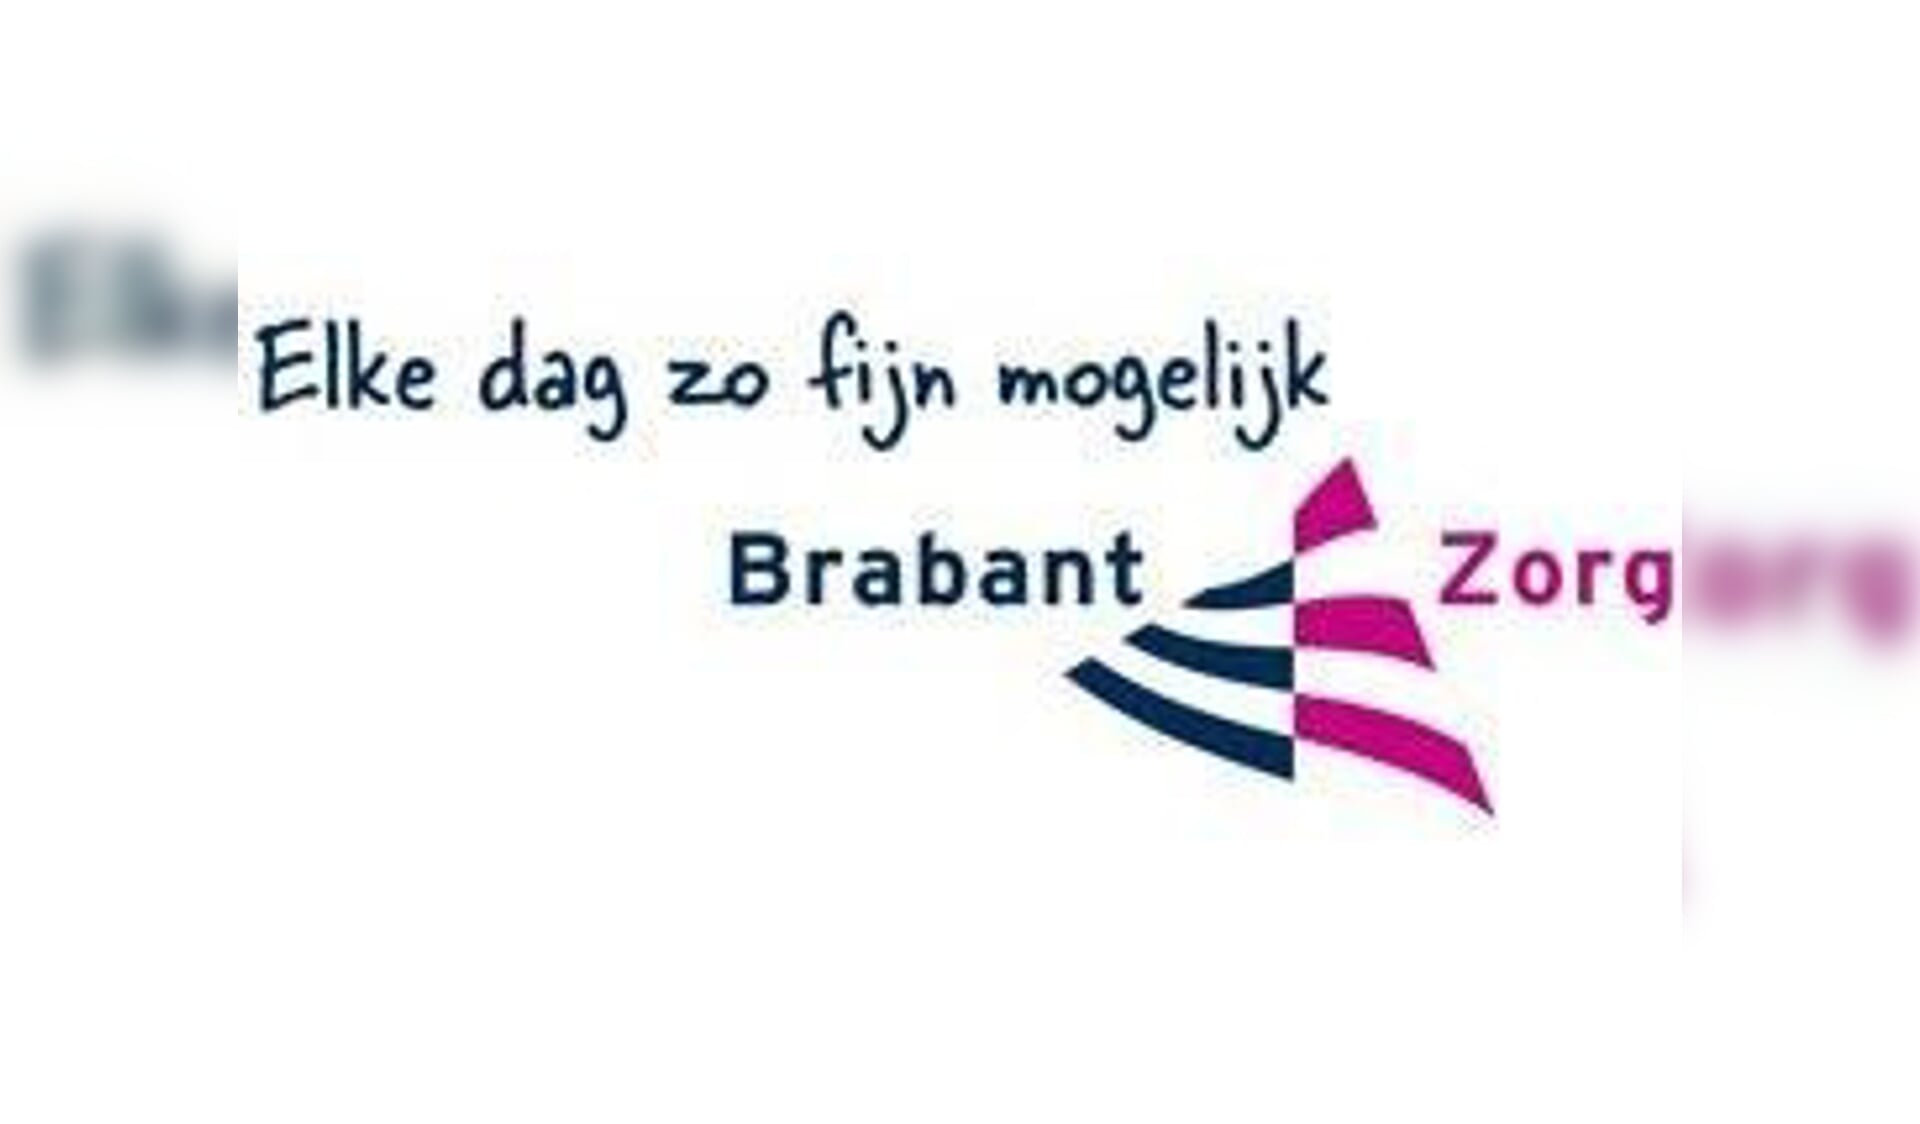 Bericht van BrabantZorg.